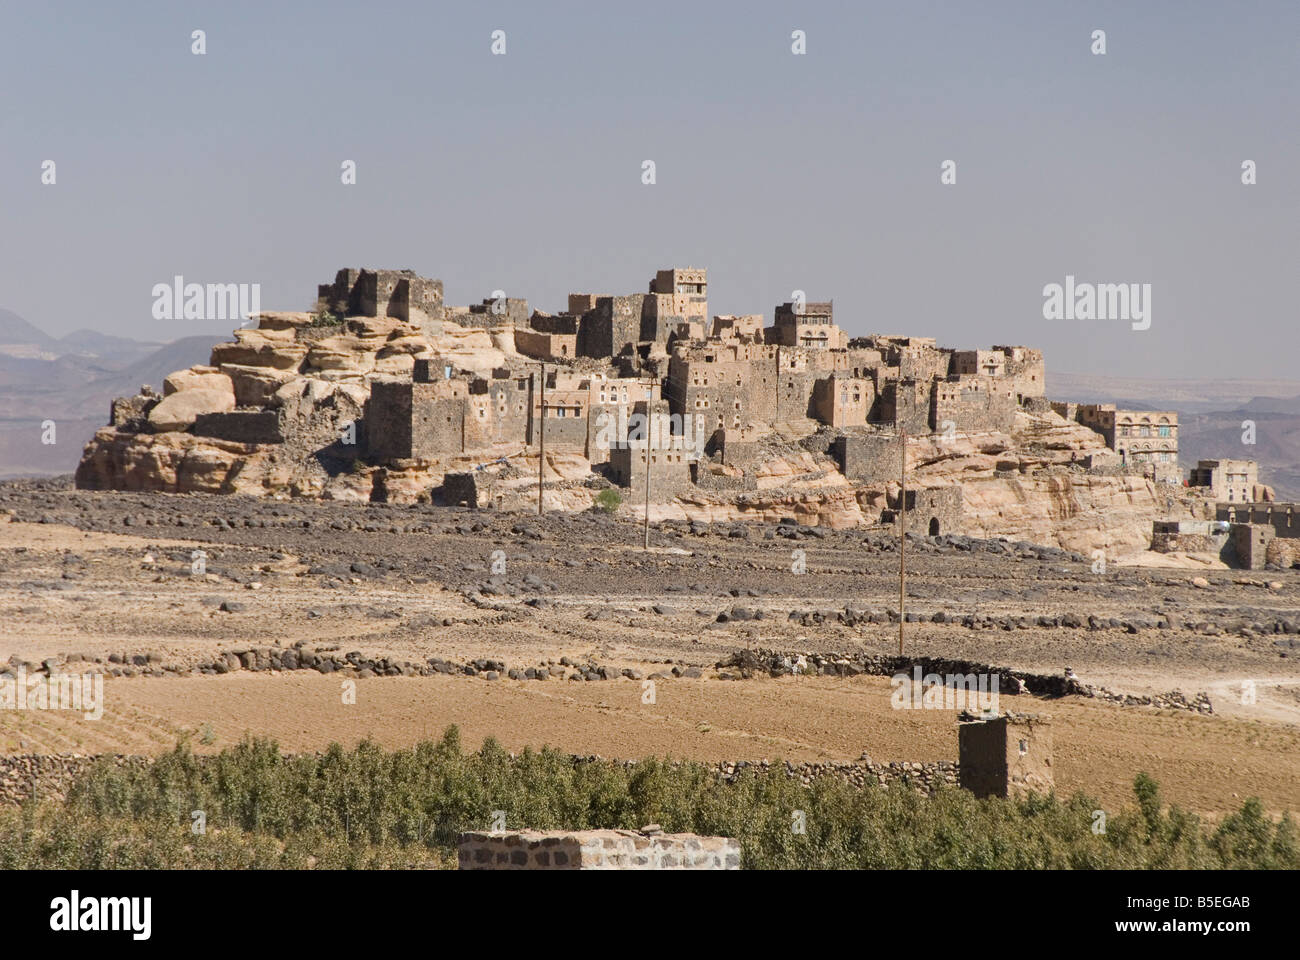 Vieux village construit sur la falaise de grès Al Gorza Shibam Valley près de San un Yémen Moyen-orient Banque D'Images